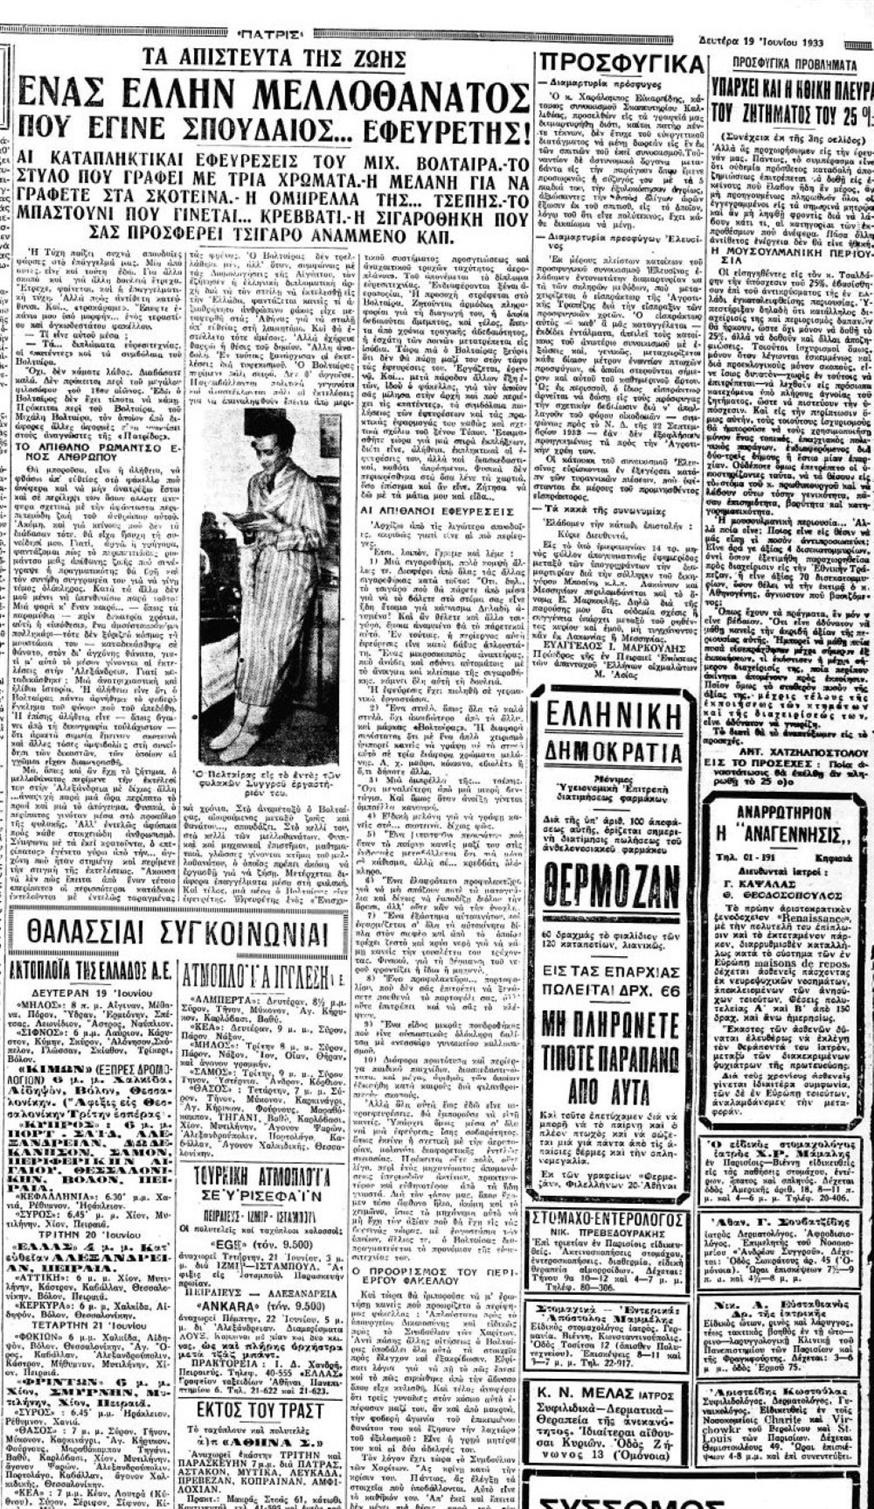 Το δημοσίευμα της «Πατρίς» 19 Ιουνίου 1933 για τον Μιχάλη Βόλταιρα